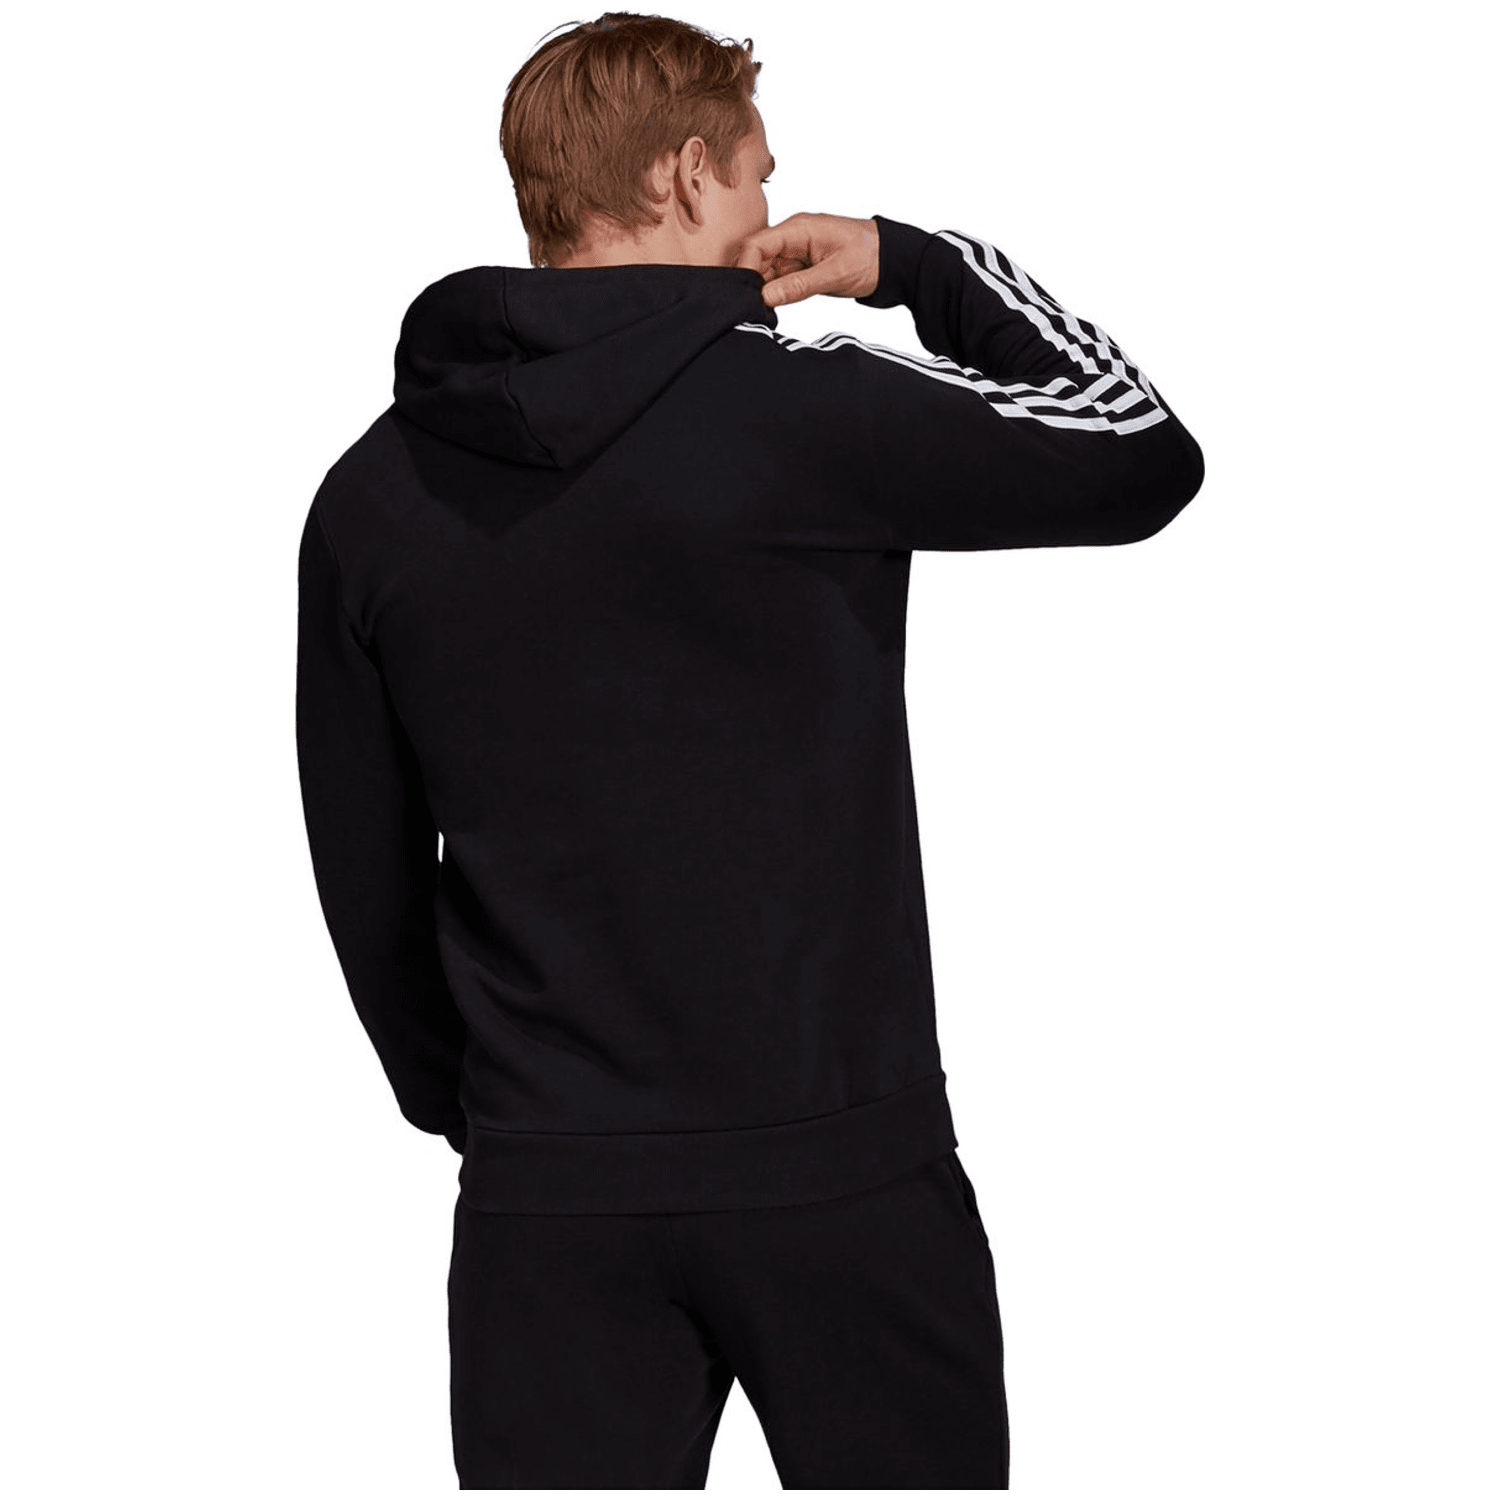 Adidas Essentials Fleece 3-Streifen Hoodie Herren Fleecejacke